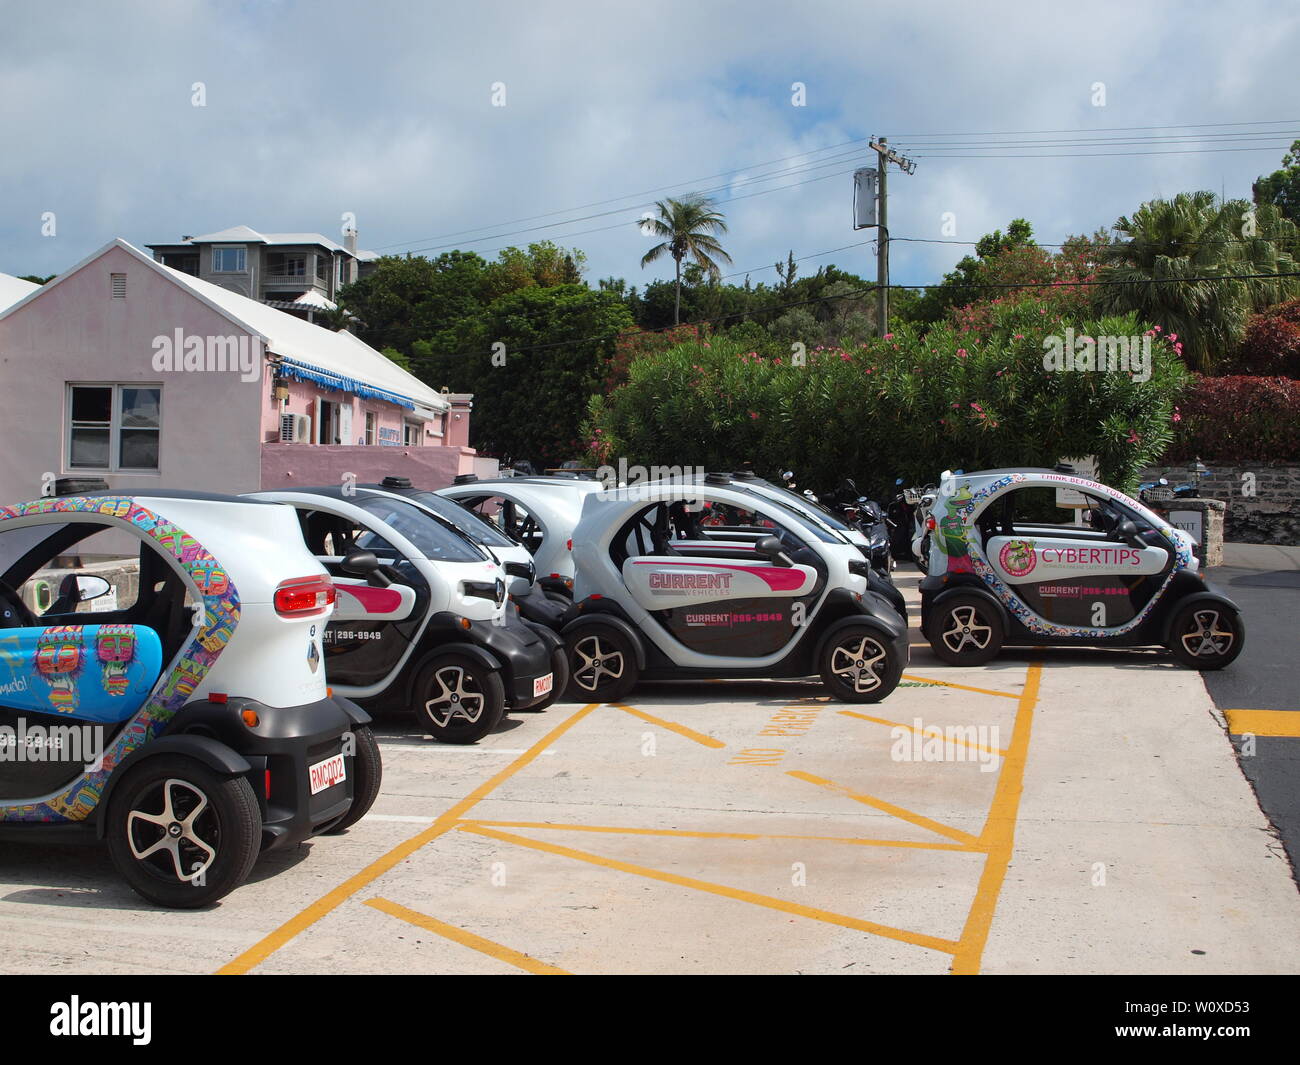 La dernière aventure de voyage de tourisme aux Bermudes. La Renault Twizy, un véhicule électrique qui permet la liberté et l'indépendance de visiter en toute sécurité. Banque D'Images